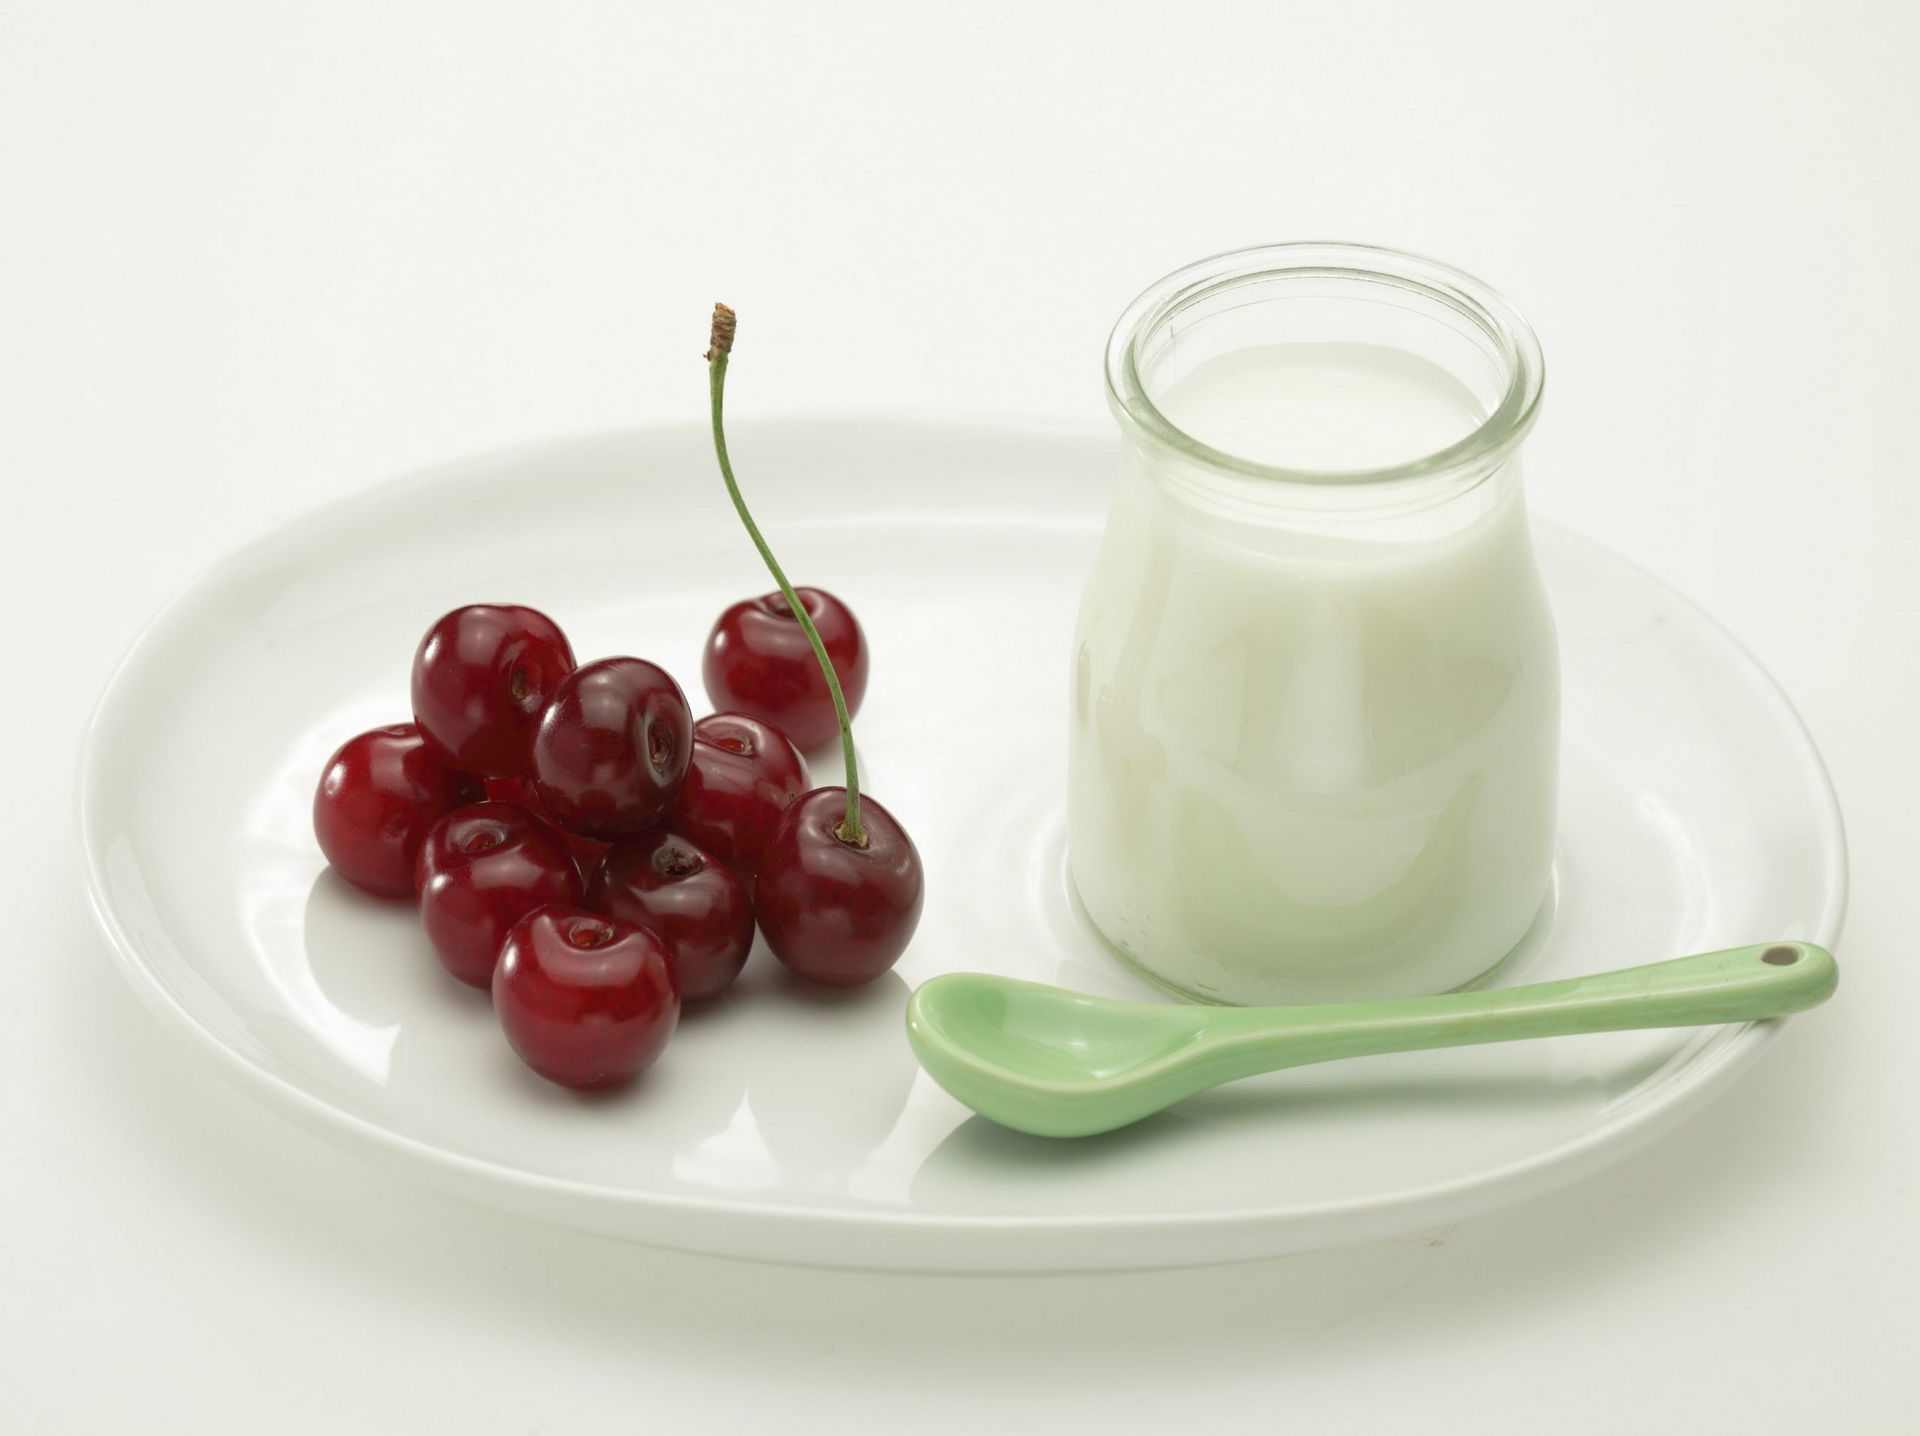 Gezond ontbijt met yoghurt en fruit